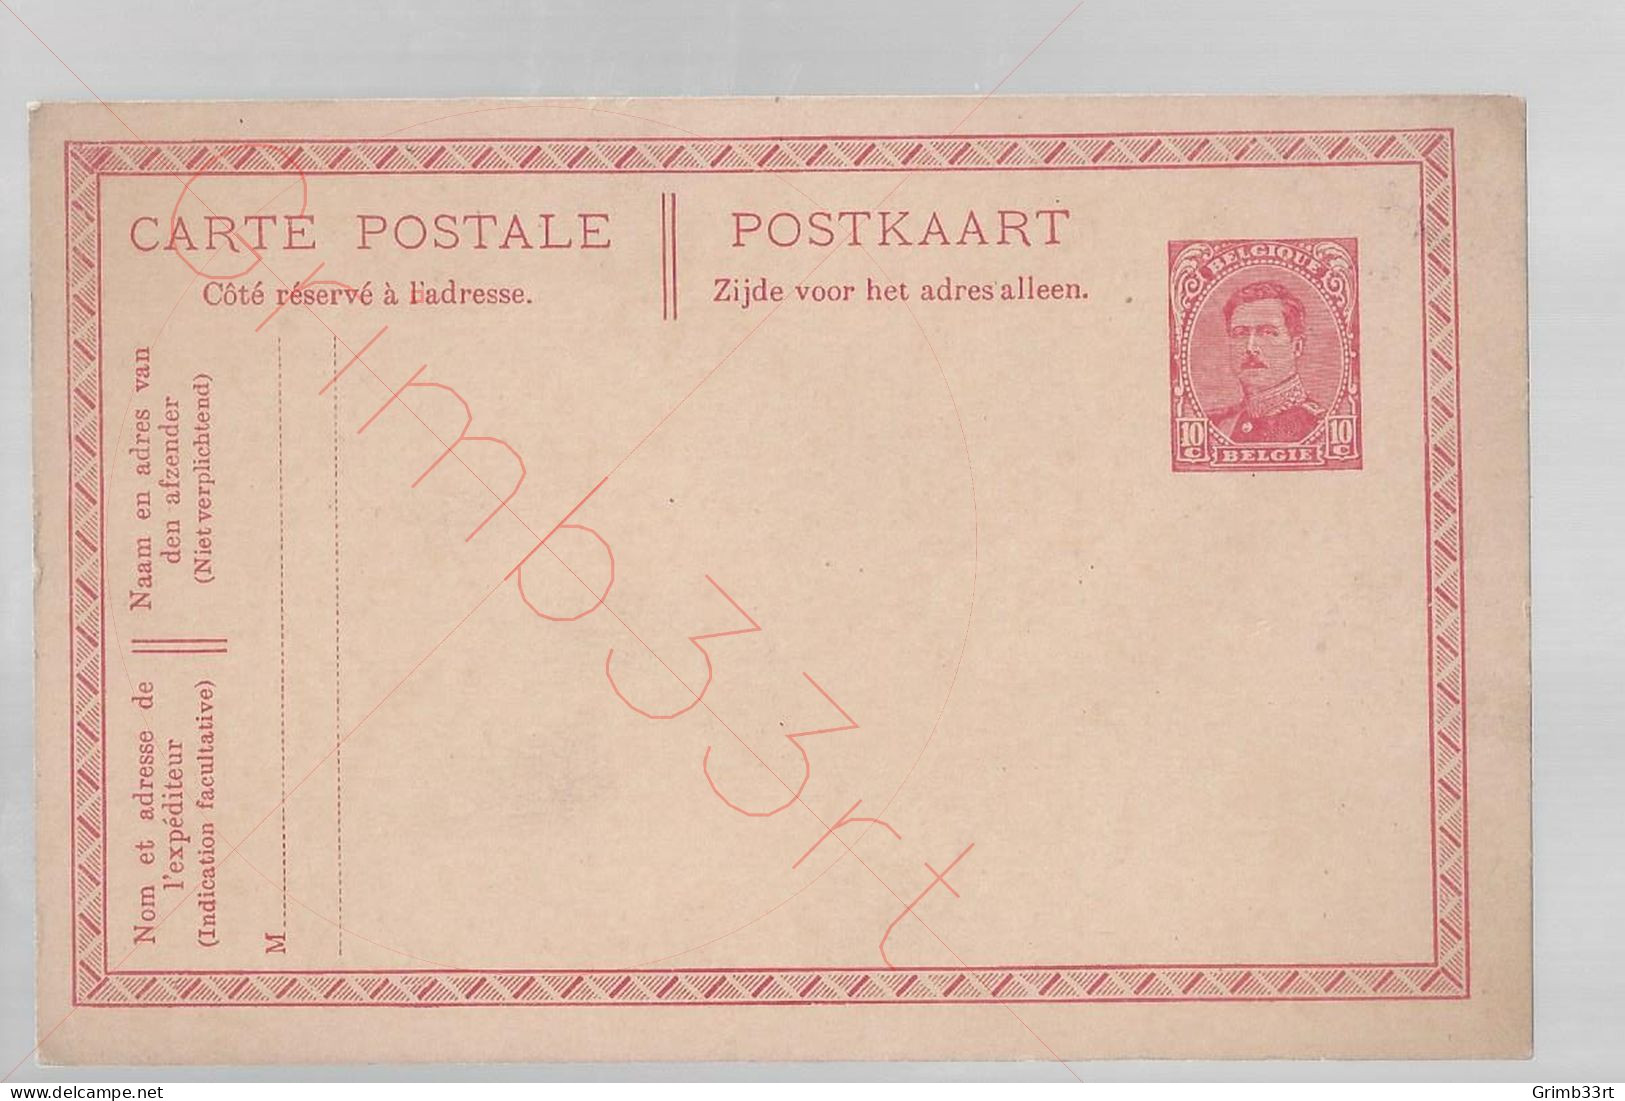 Albert I - 10 Cent- Postkaart - Postkarten 1909-1934